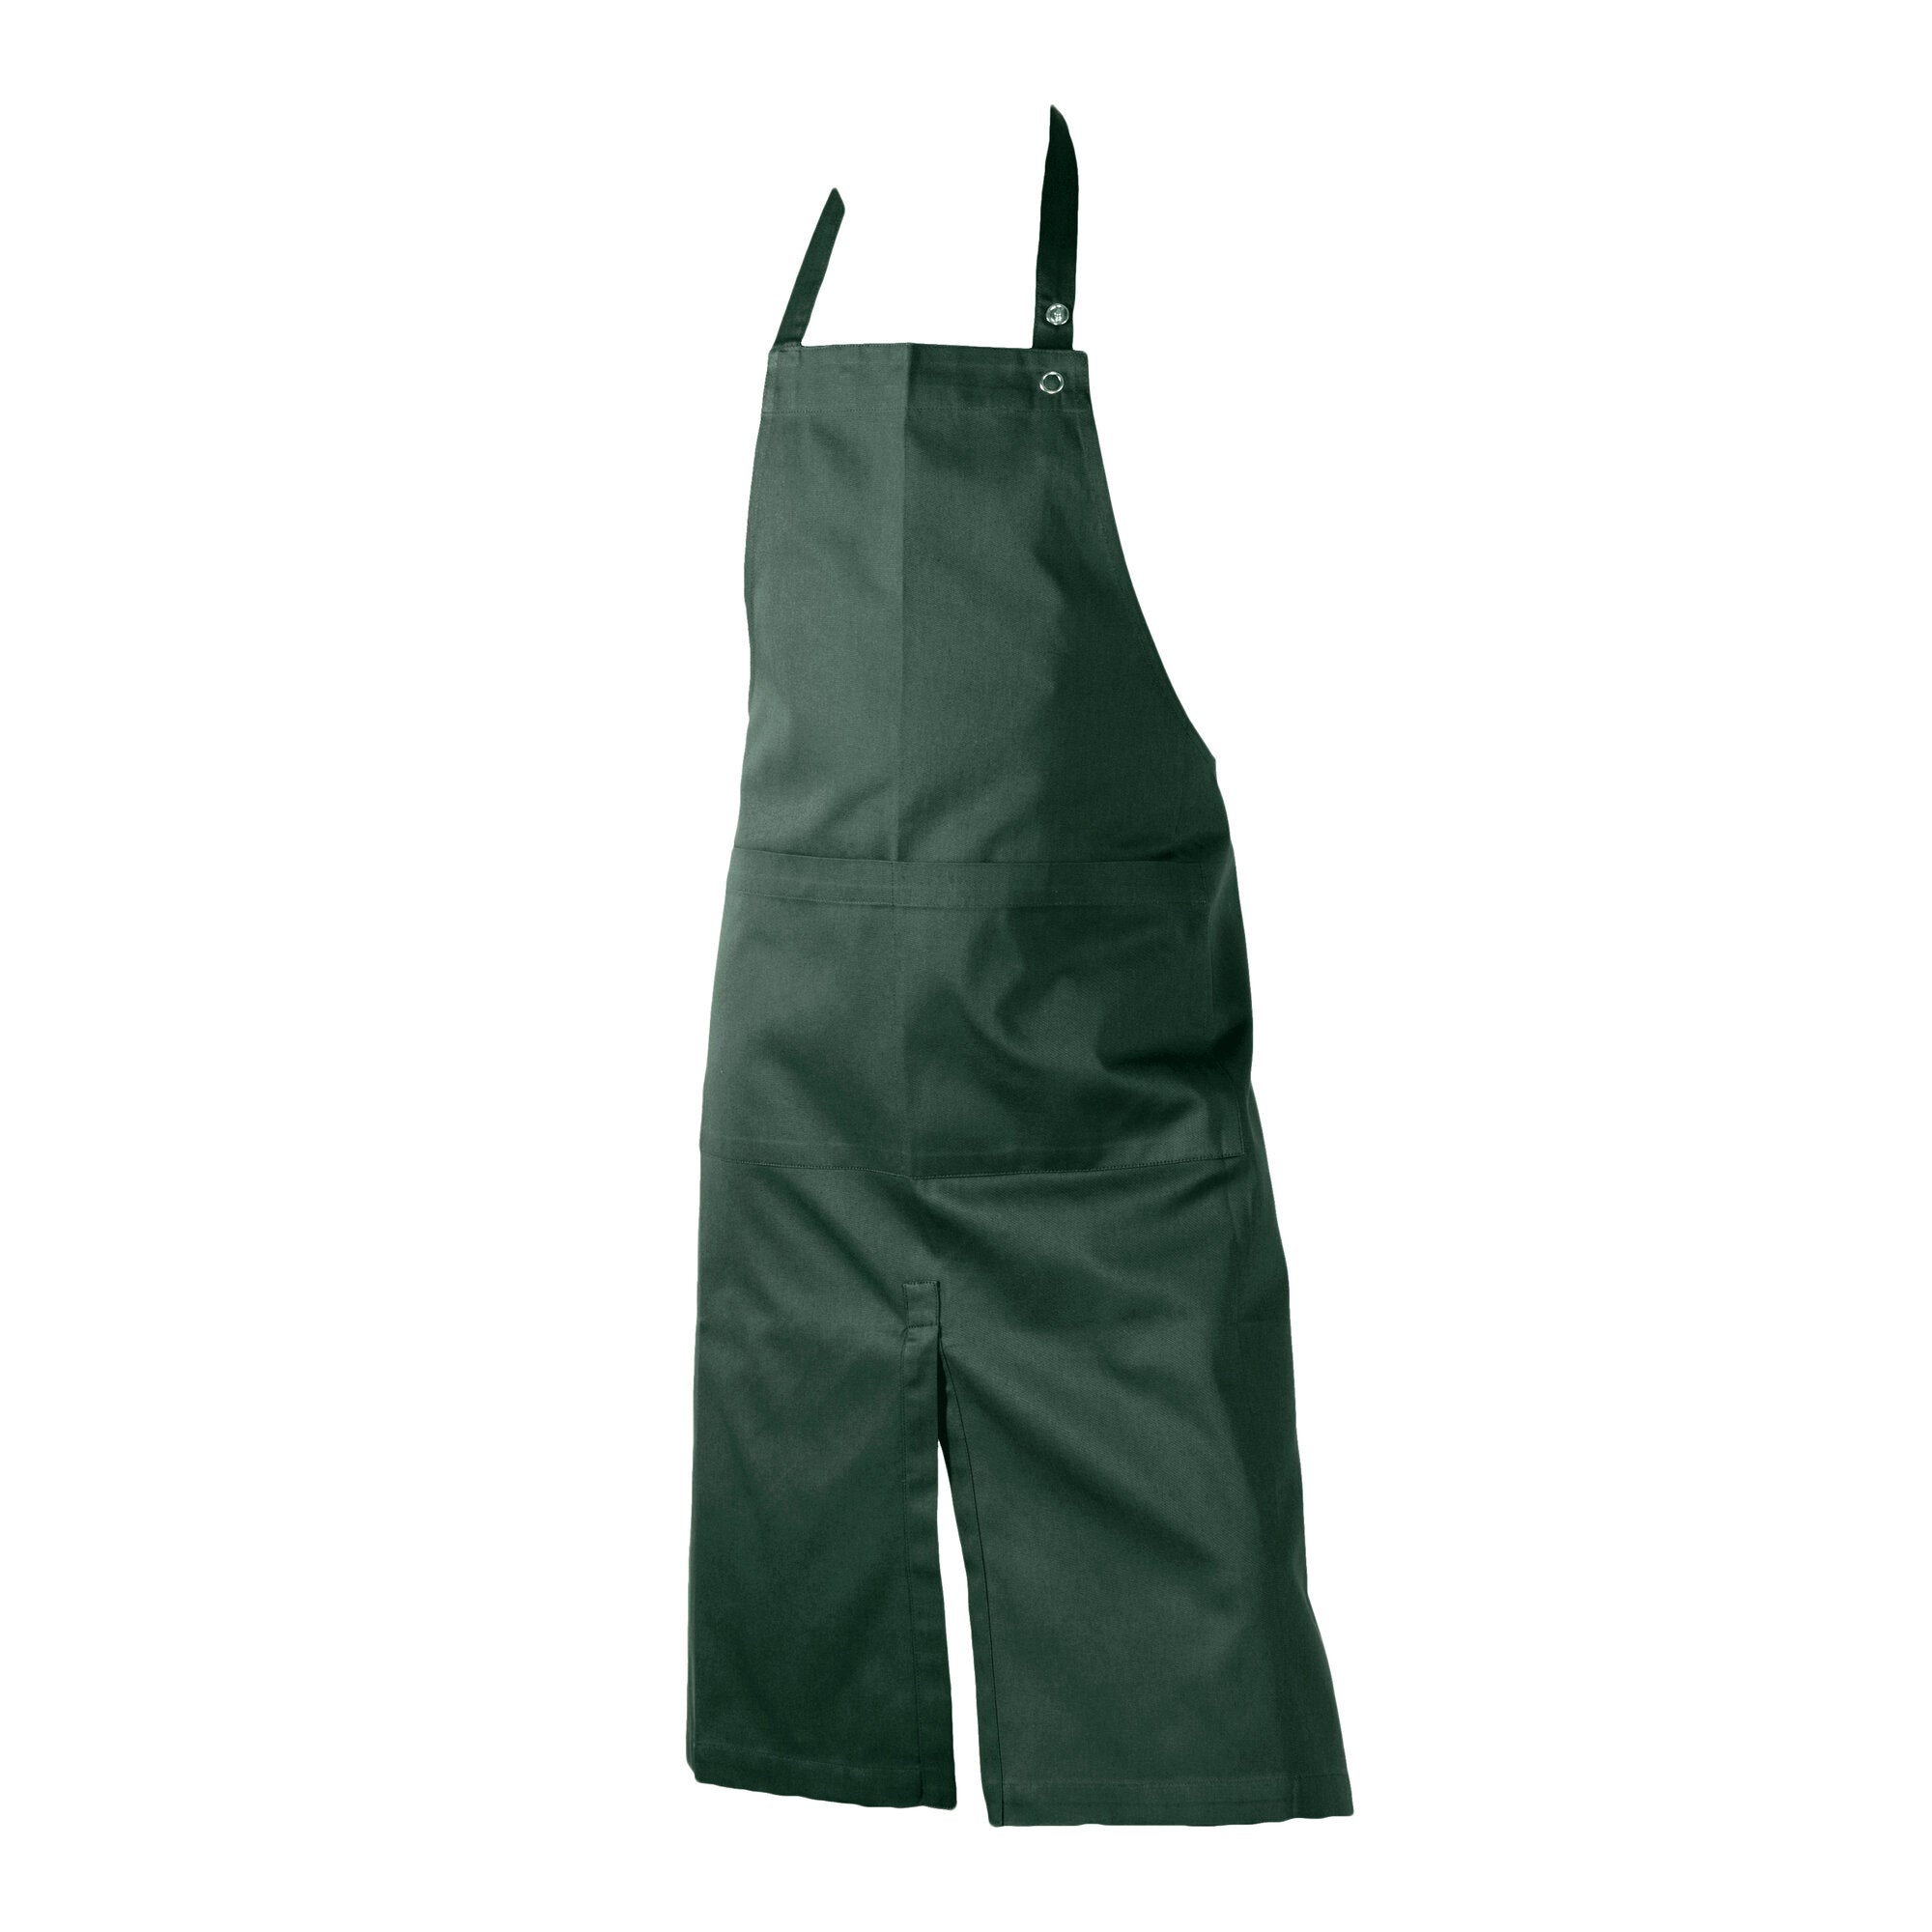 Det organiska företagets förkläde med fickan, mörkgrön